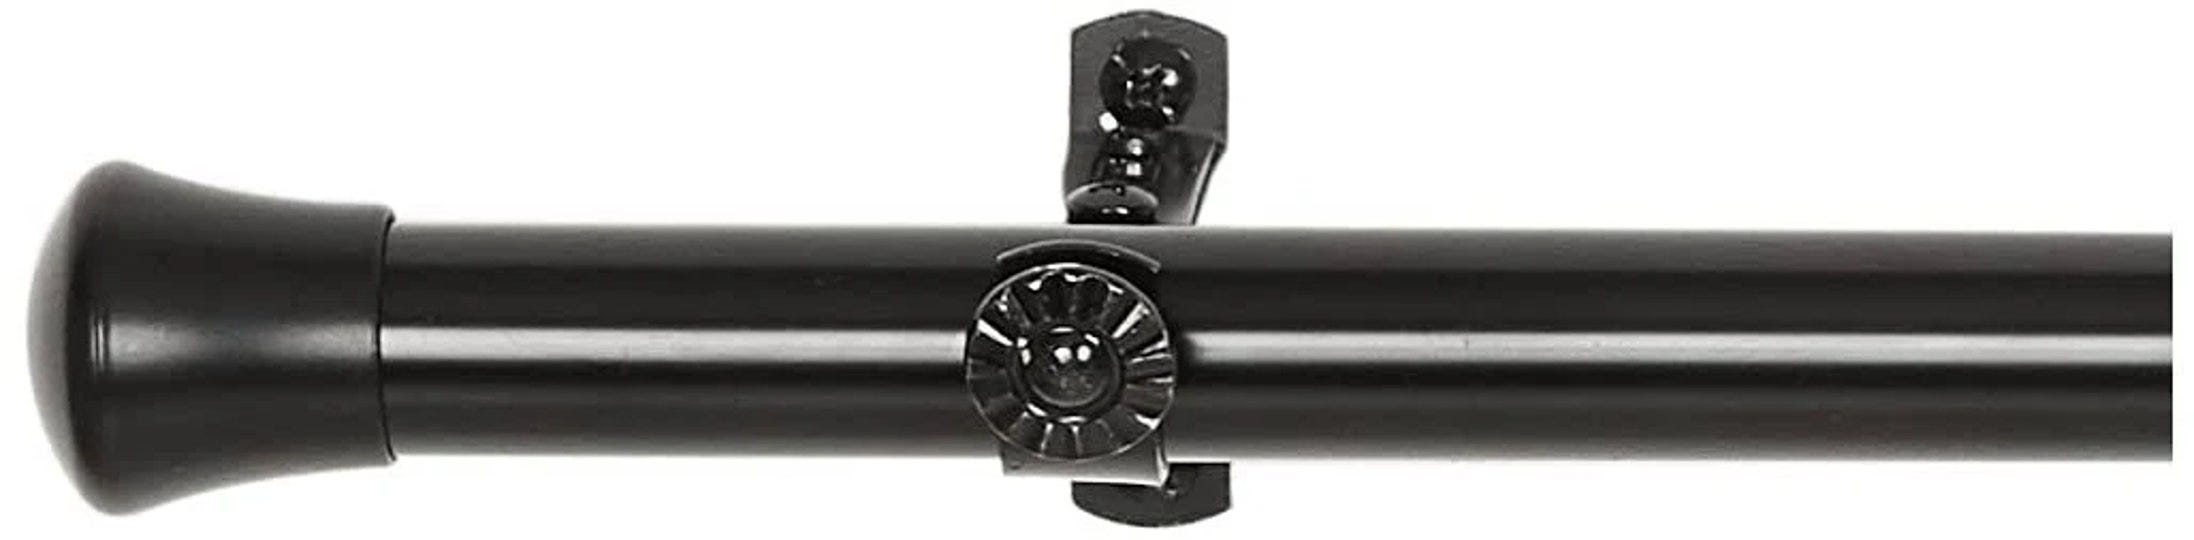 rod-desyne-13-16-inch-single-corner-curtain-rod-28-inch-48-inch-each-side-black-1